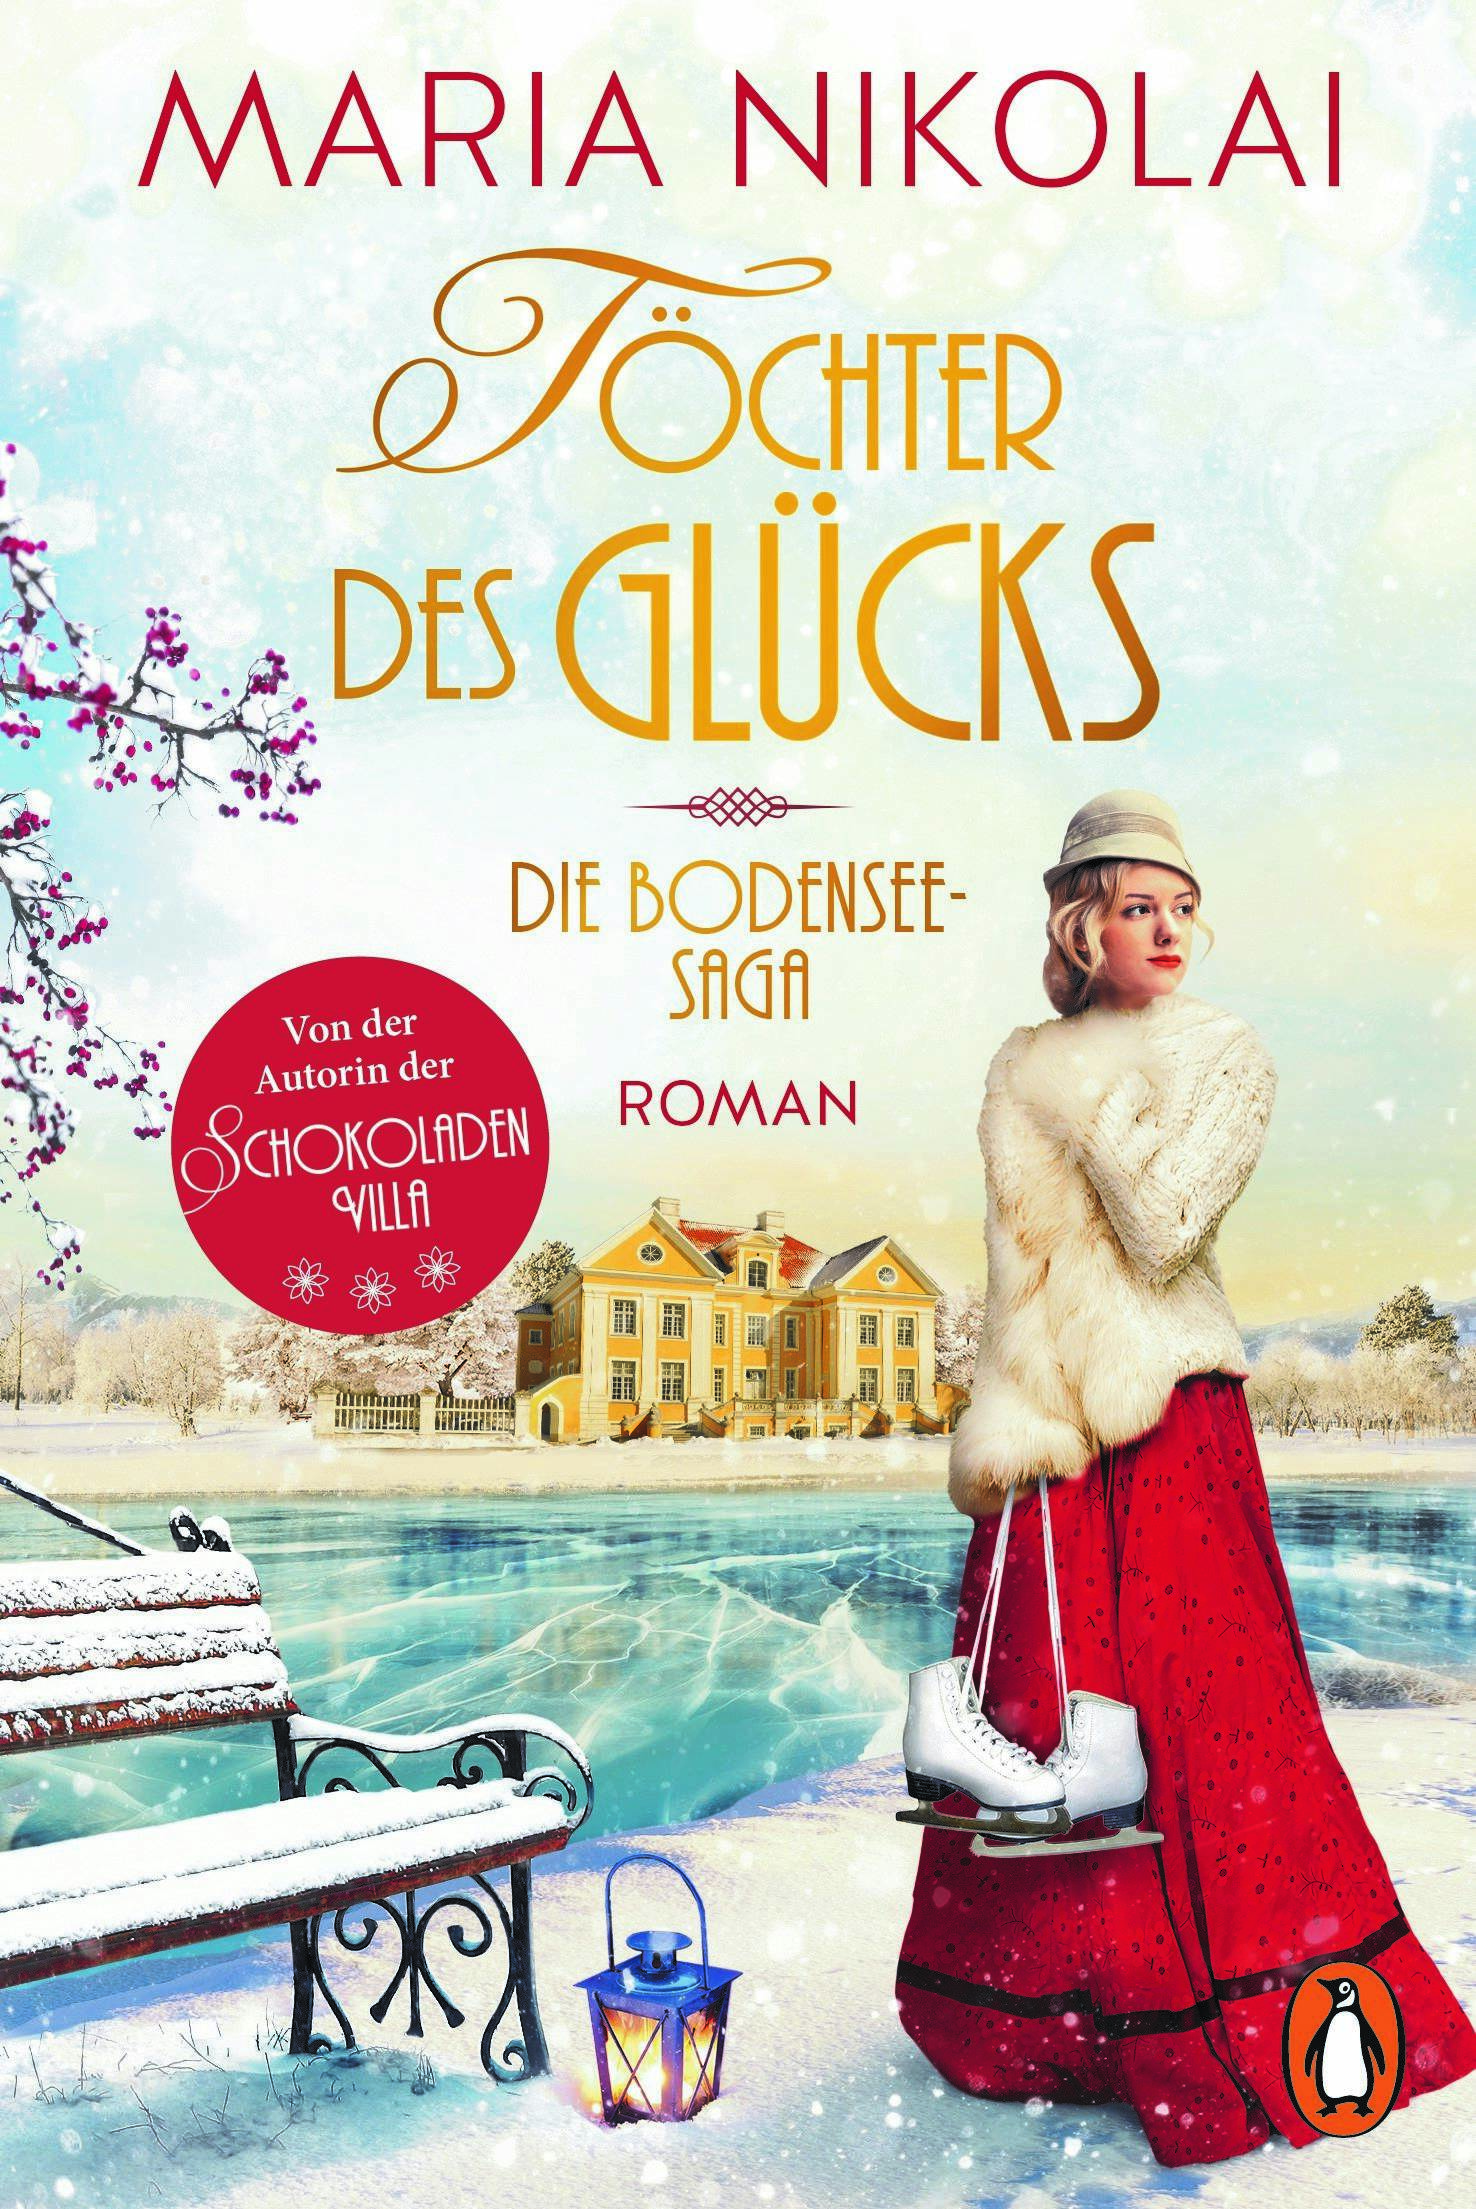 Cover des Buches "Die Töchter des Glücks" von Maria Nikolai (c) Penguin Verlag